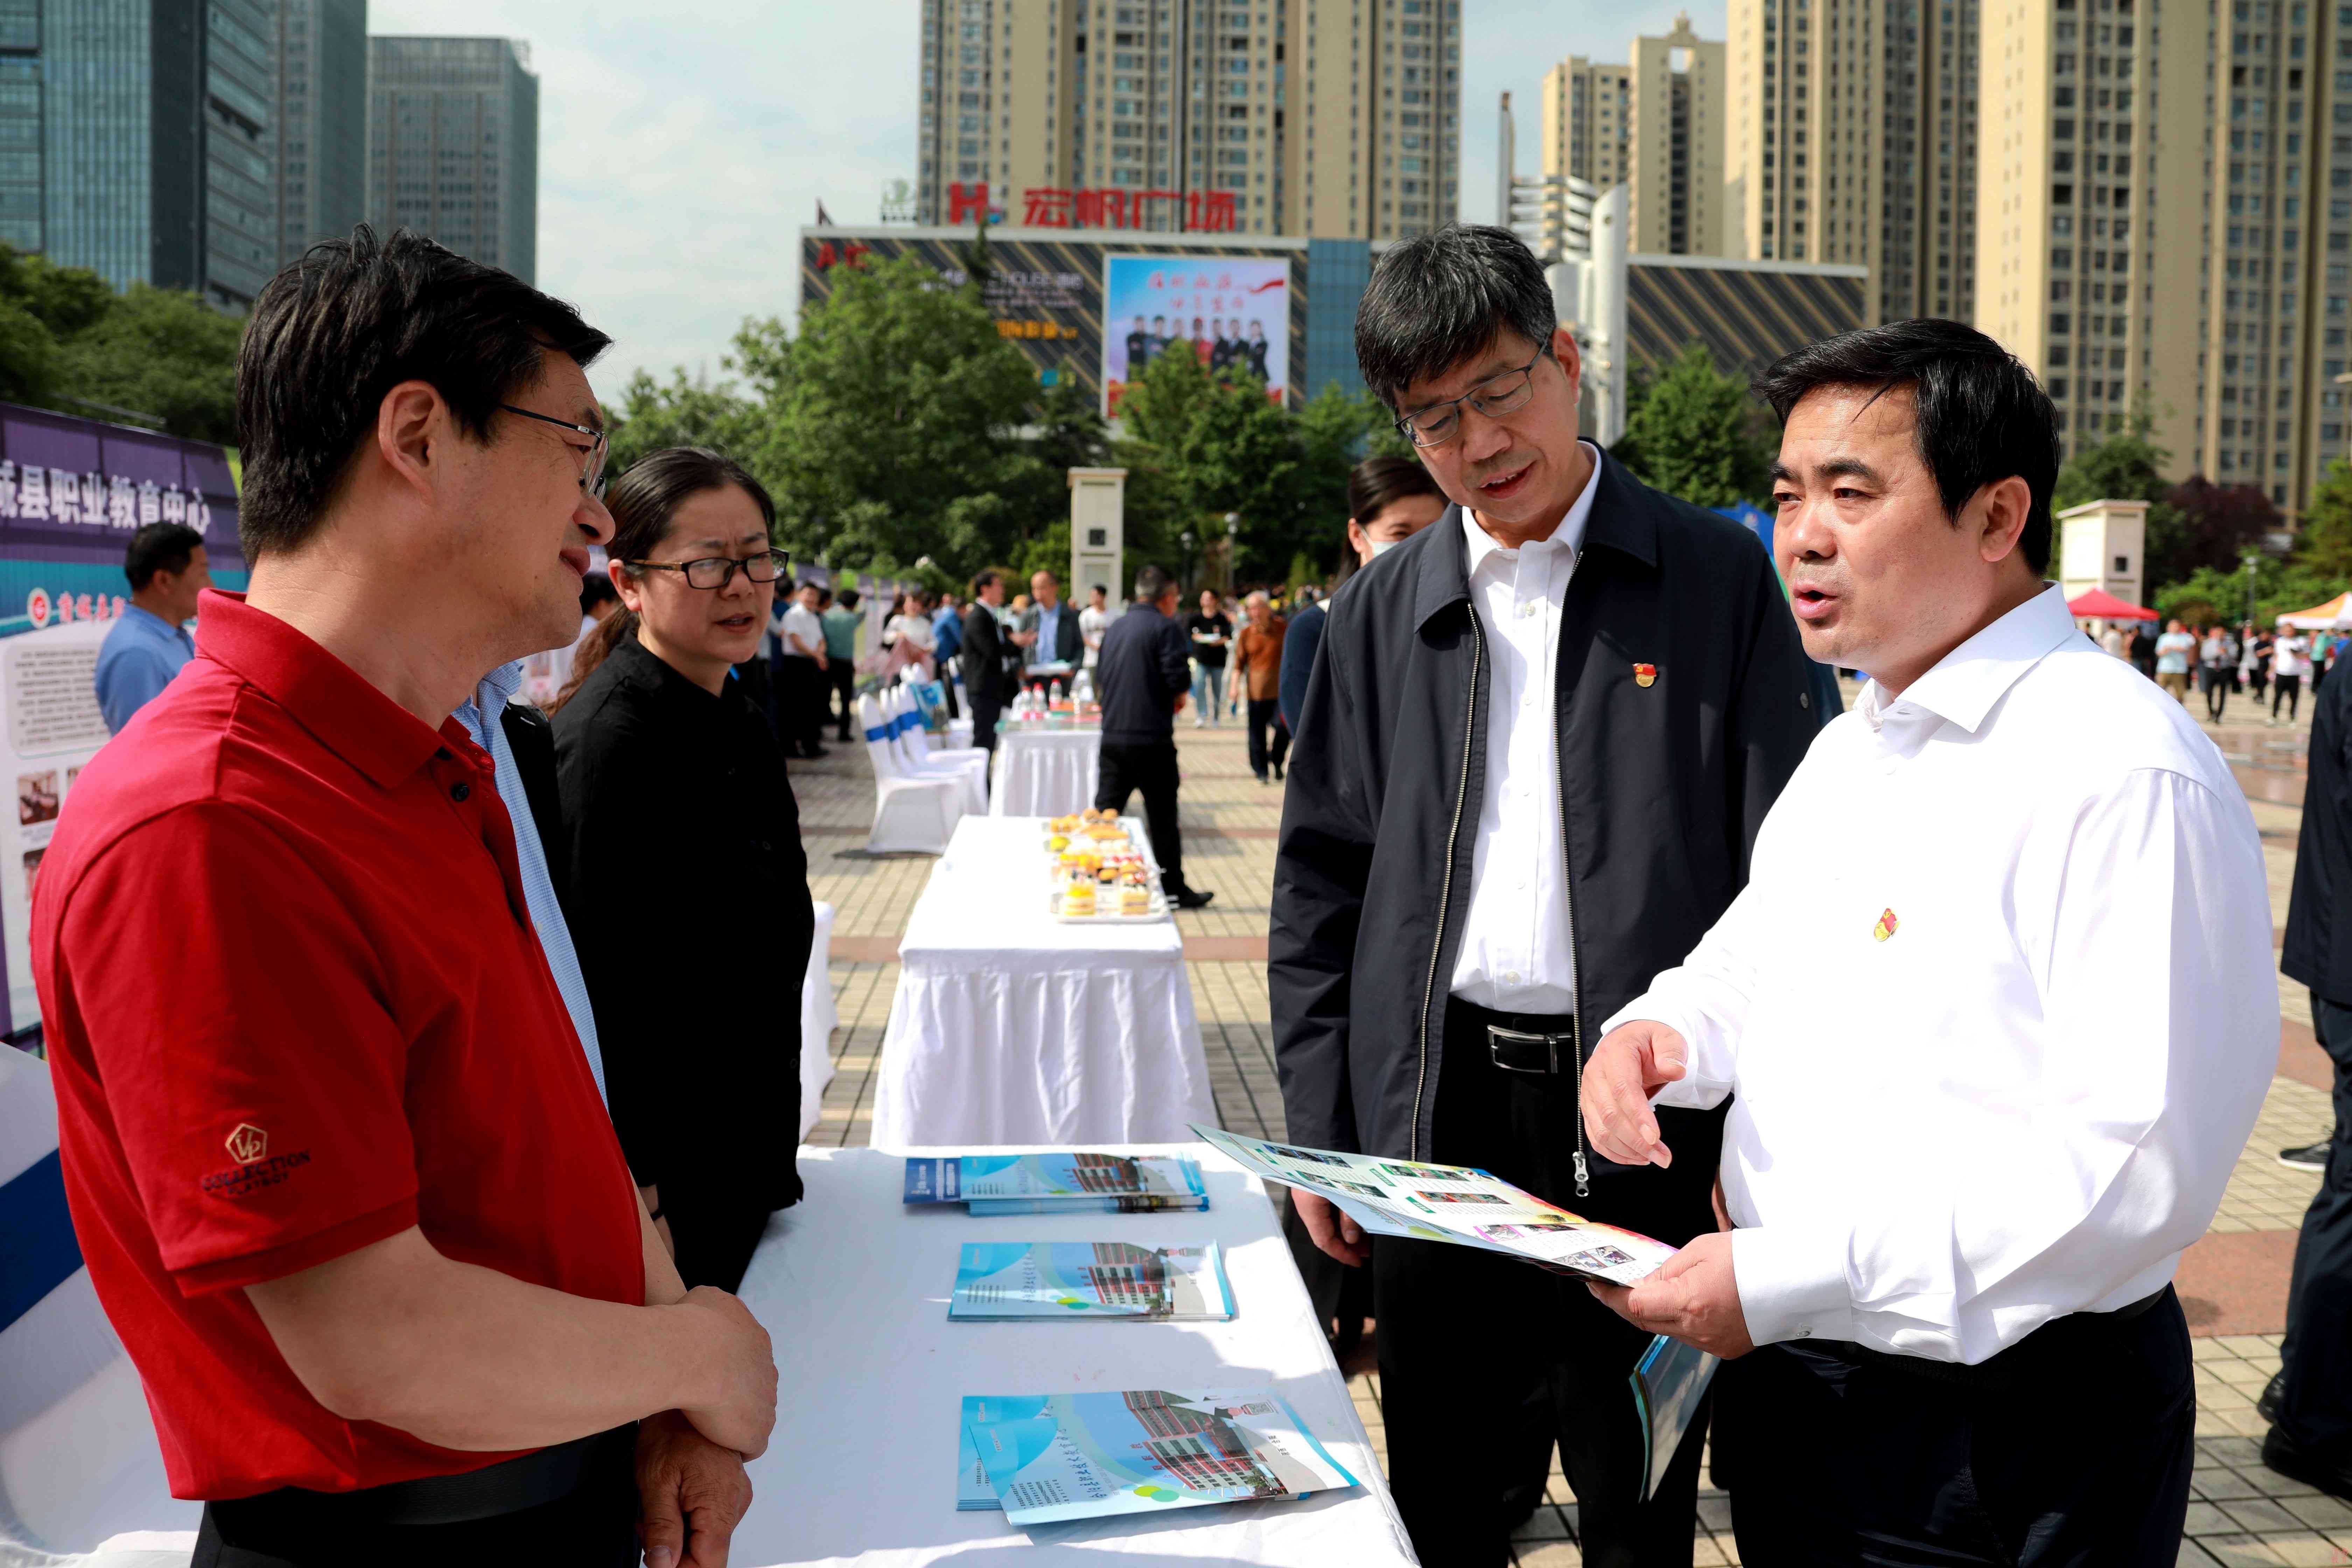 2023年渭南市职业教育活动周正式启动